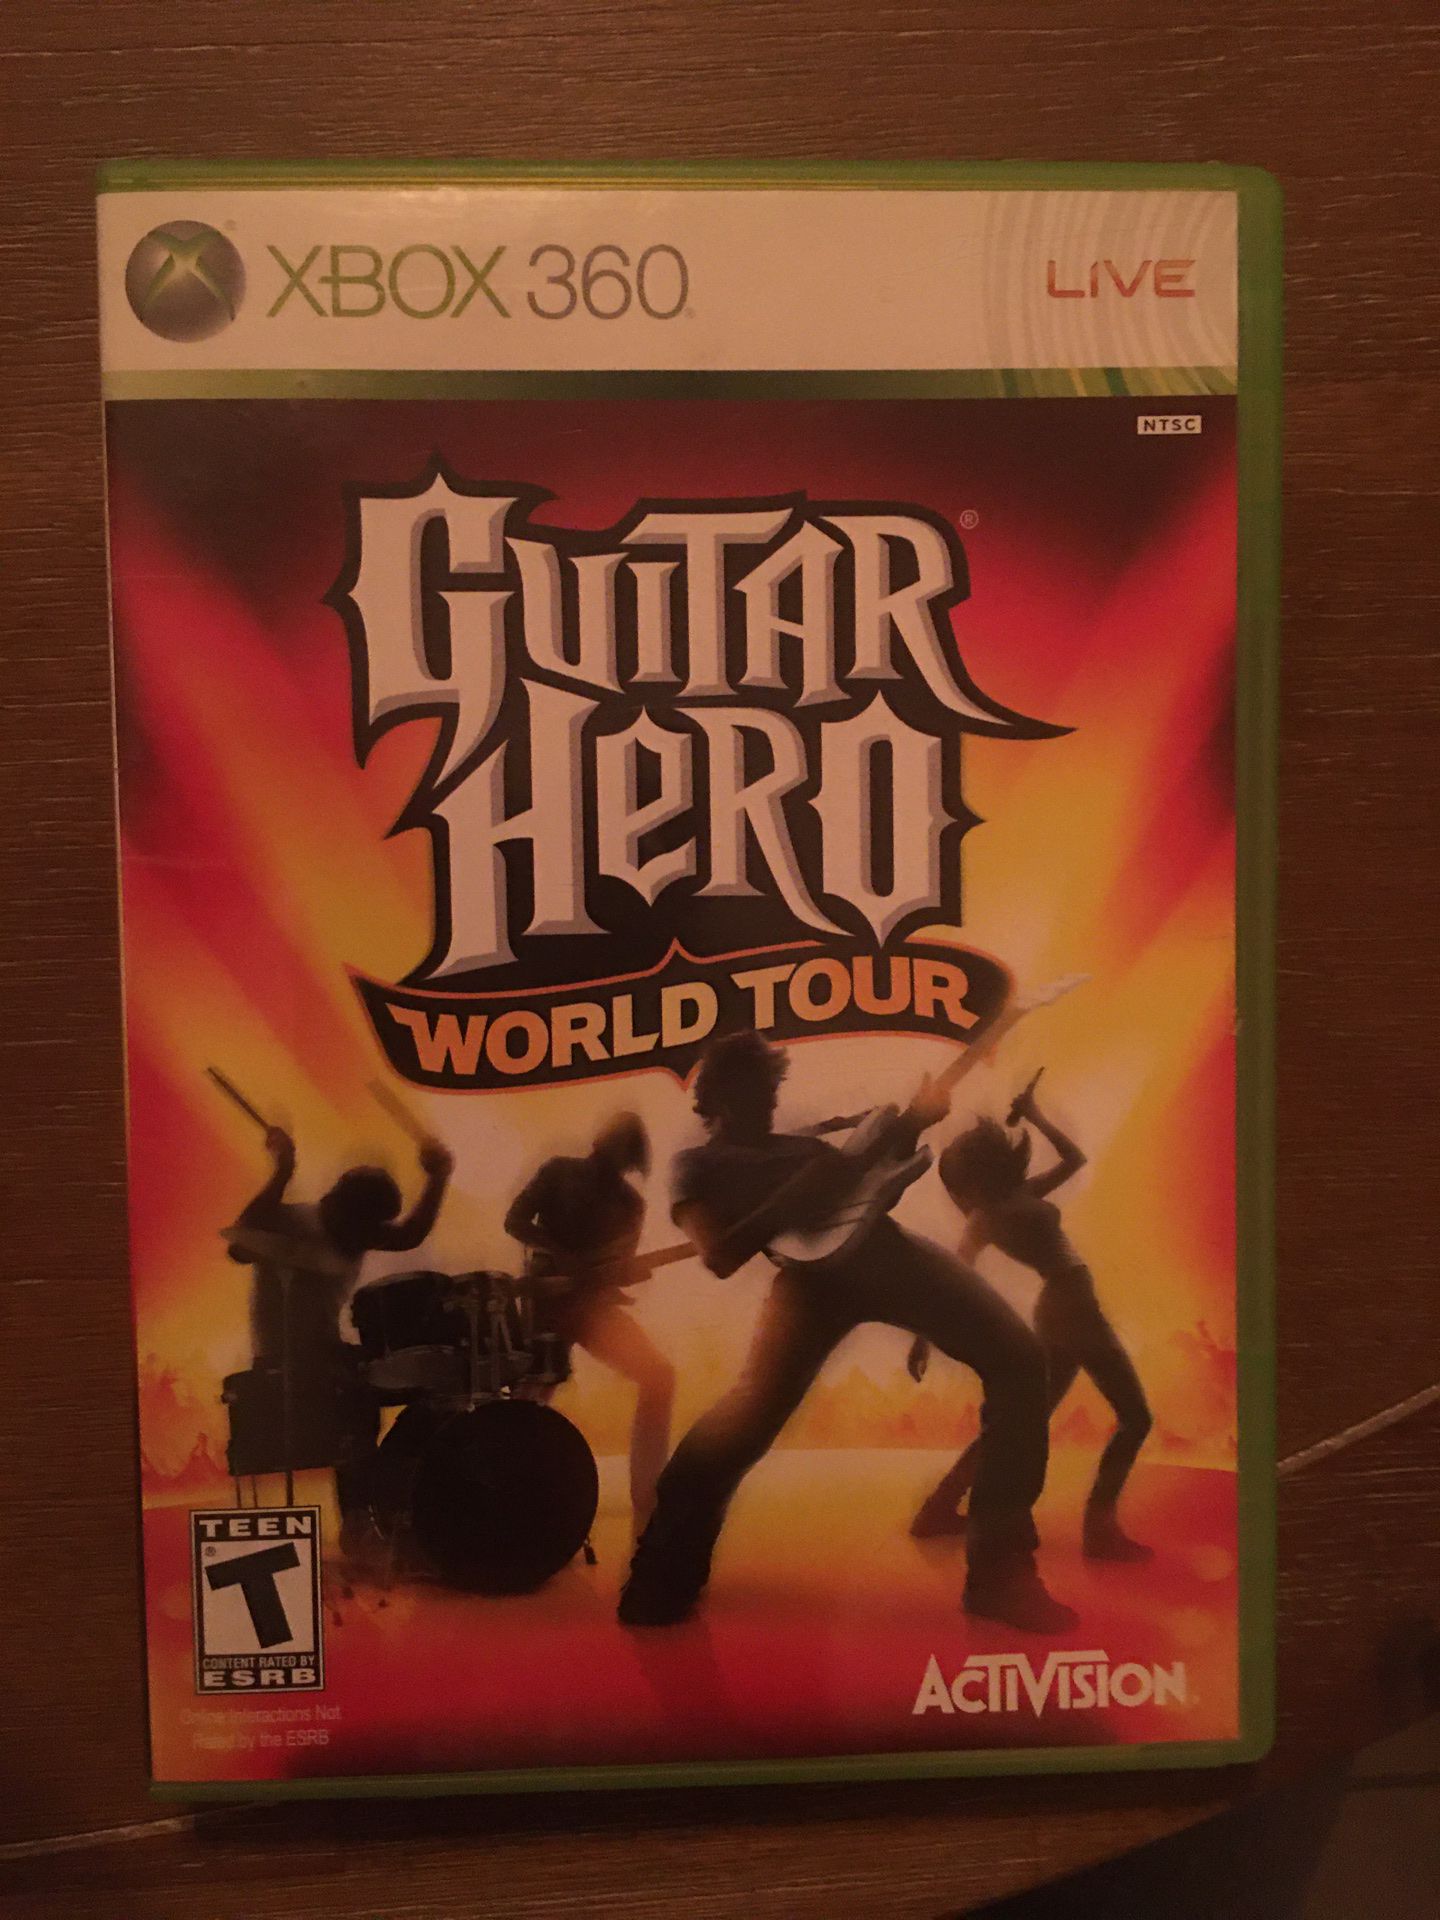 Xbox 360 guitar hero world tour